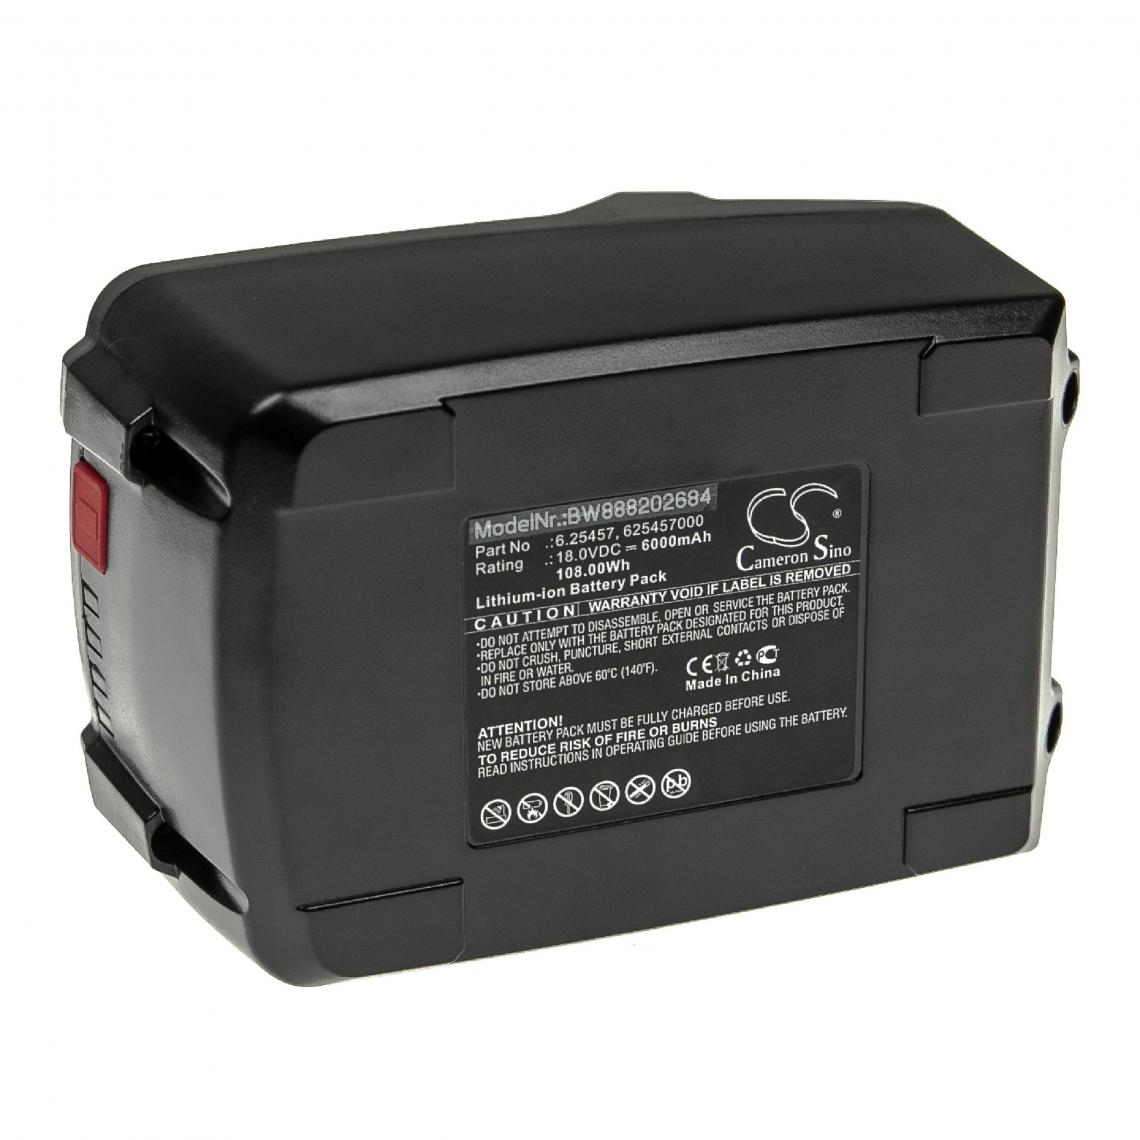 Vhbw - vhbw Batterie compatible avec Metabo SB 18 602245500, SB 18 602245510, SB 18 602245840 outil électrique (6000mAh Li-ion 18 V) - Autre appareil de mesure